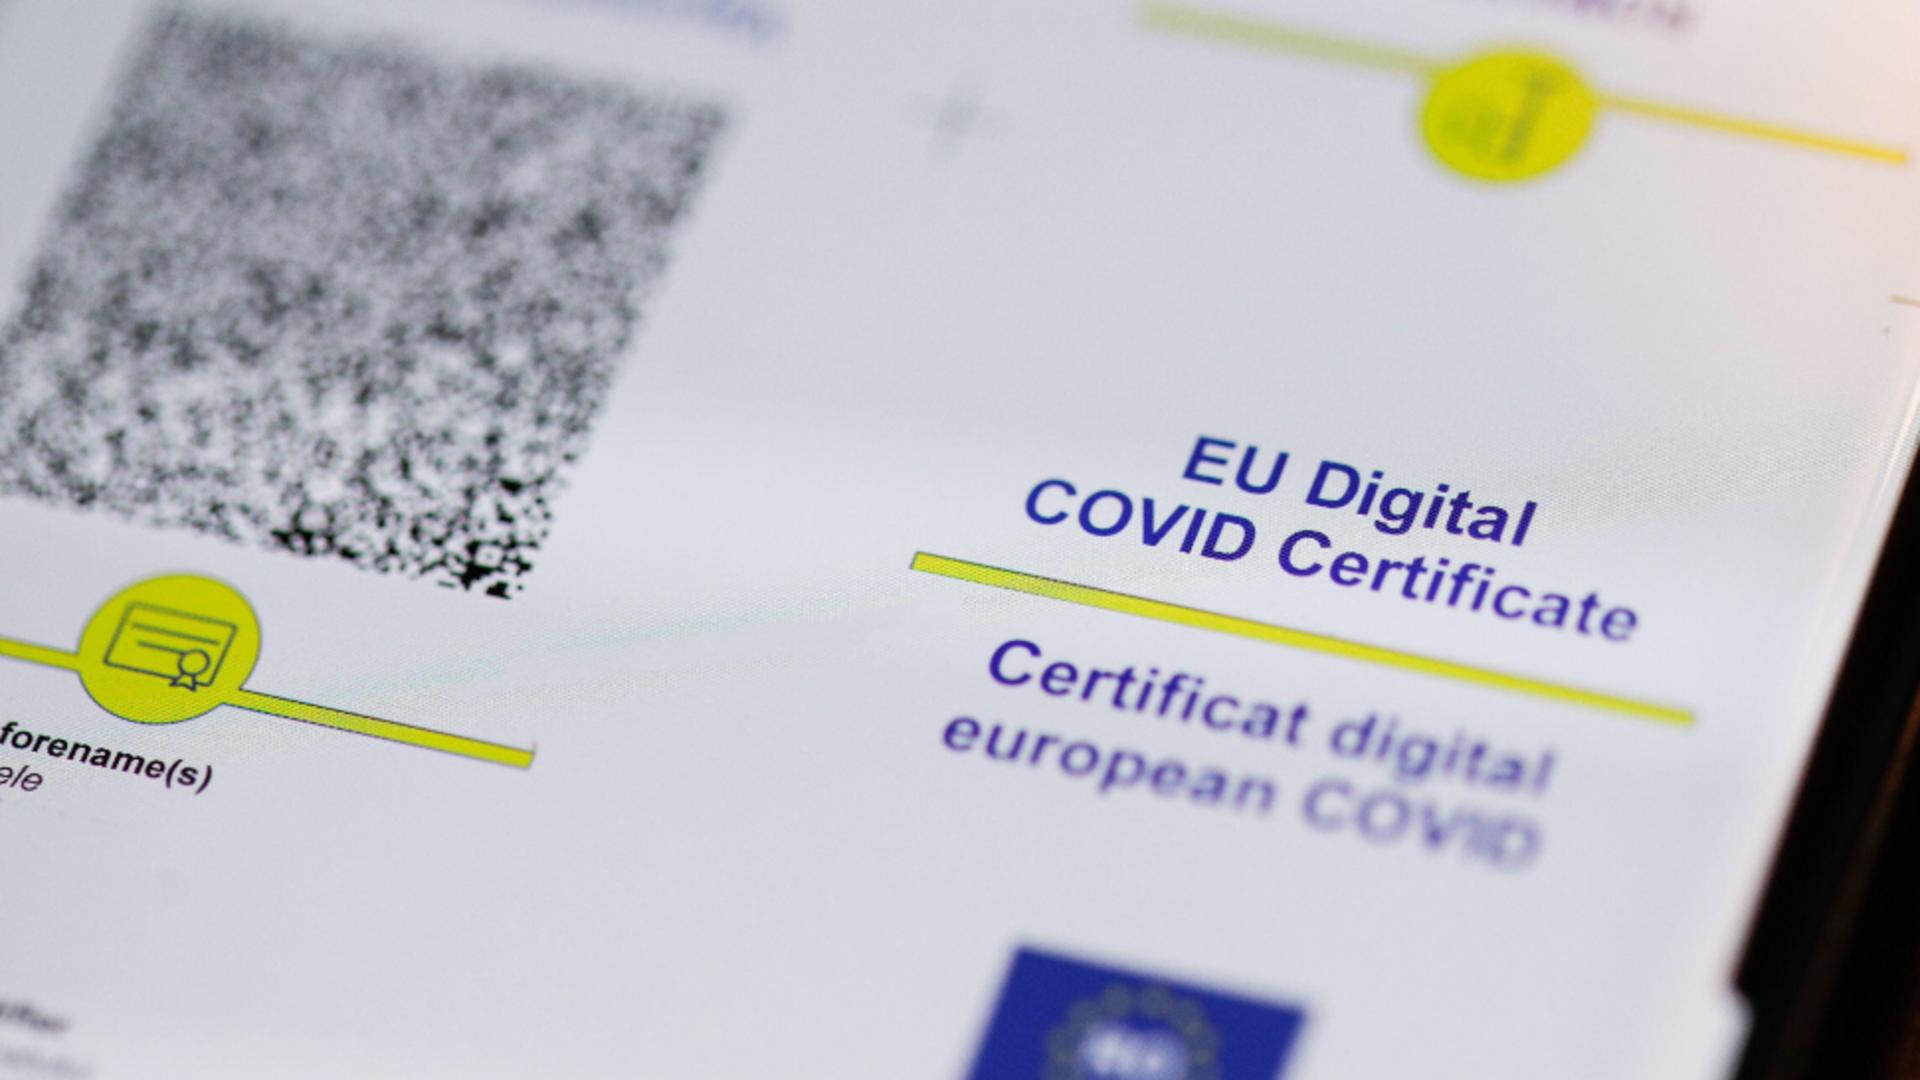 Cseke Attila, noi declarații despre obligativitatea certificatului digital COVID pentru personalul medical. FOTO: Profi Media